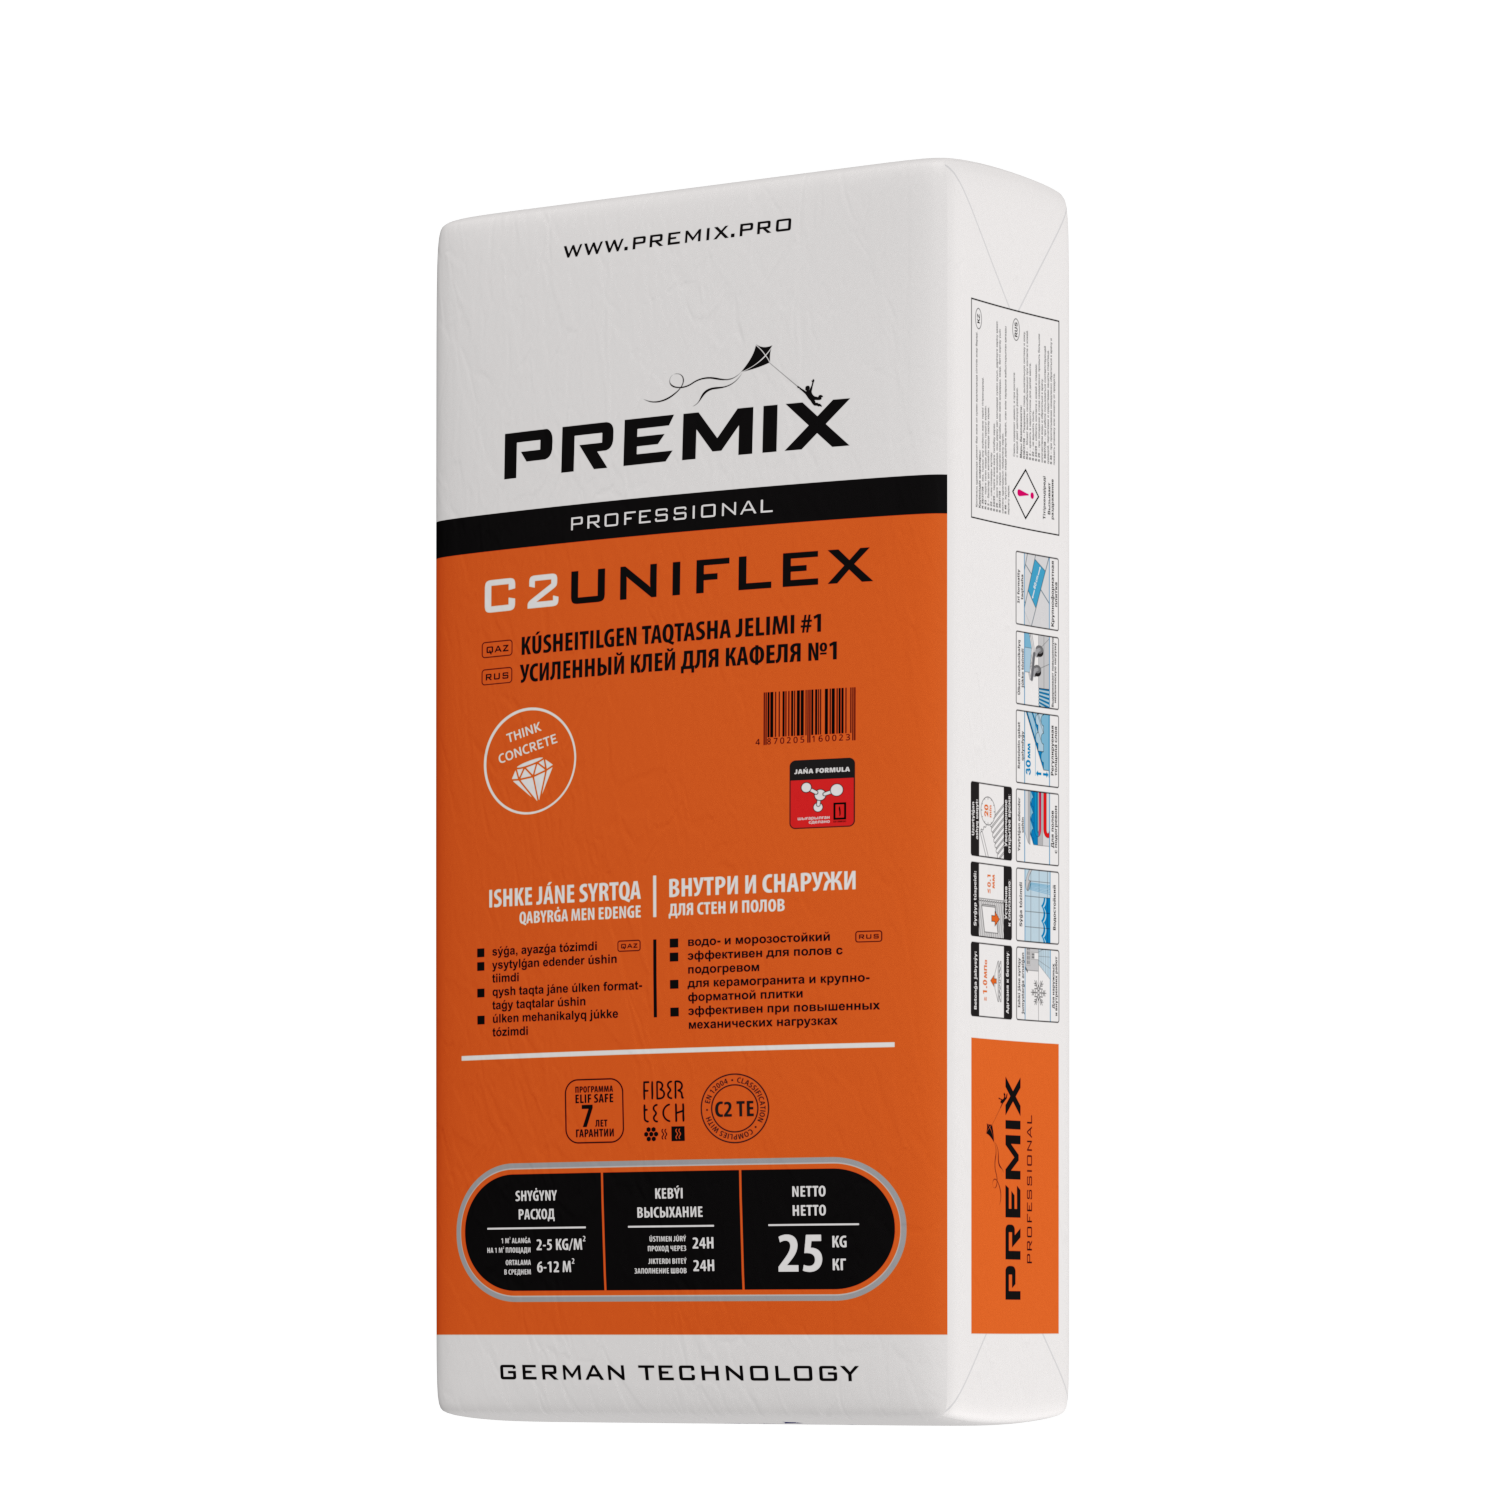 Premix C2 Uniflex клей для керамогранита и крупноформатной плитки (25kg)